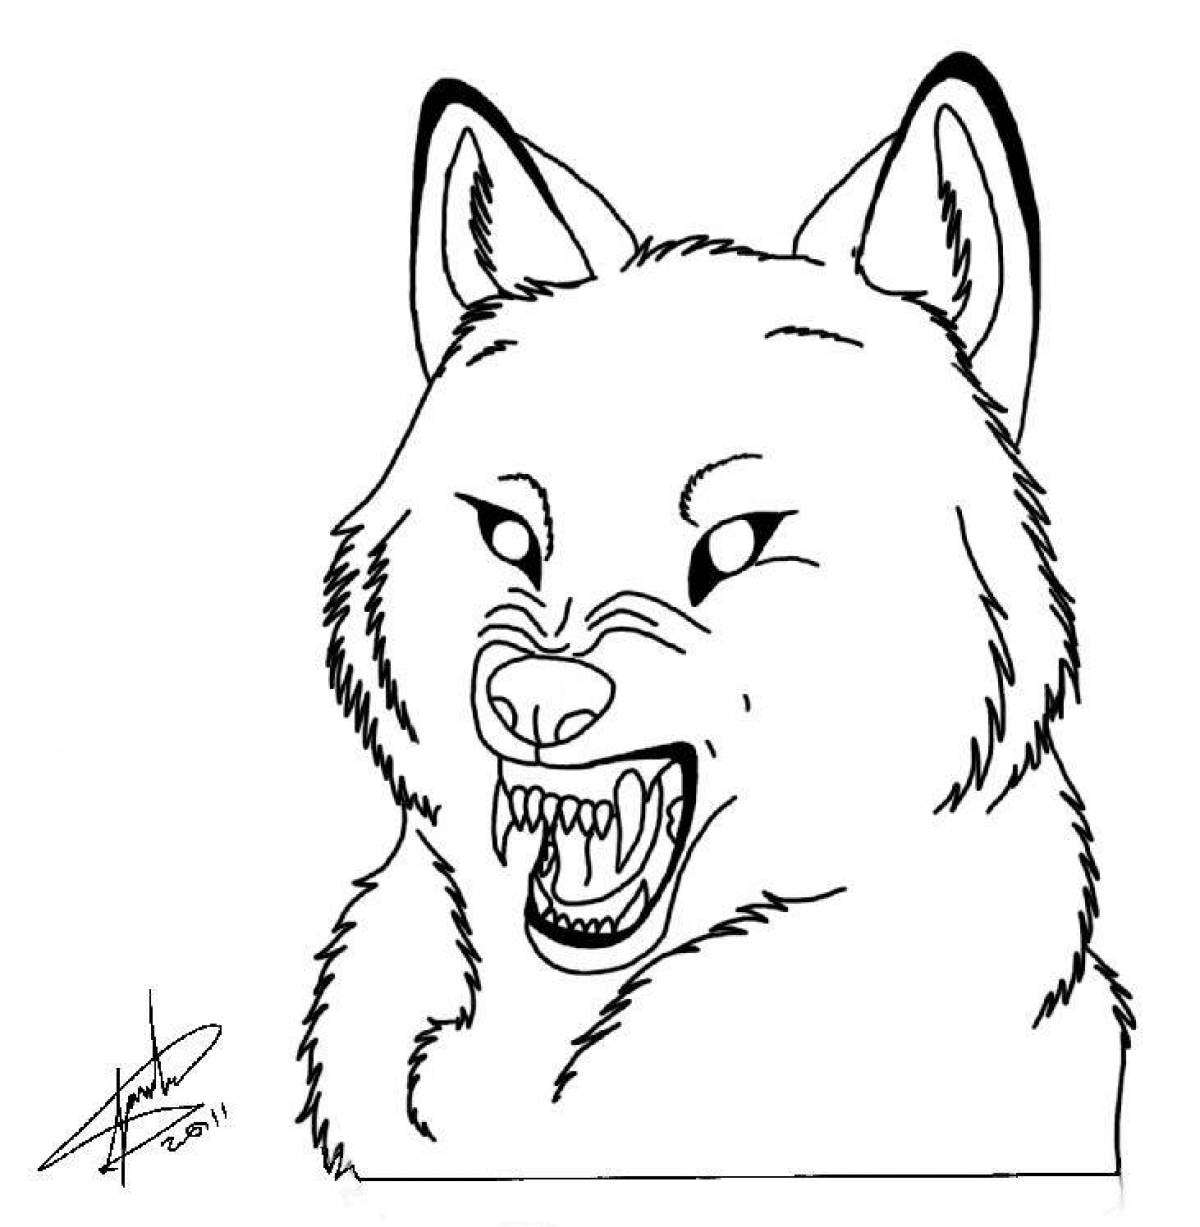 Как нарисовать собаку злую легко и просто